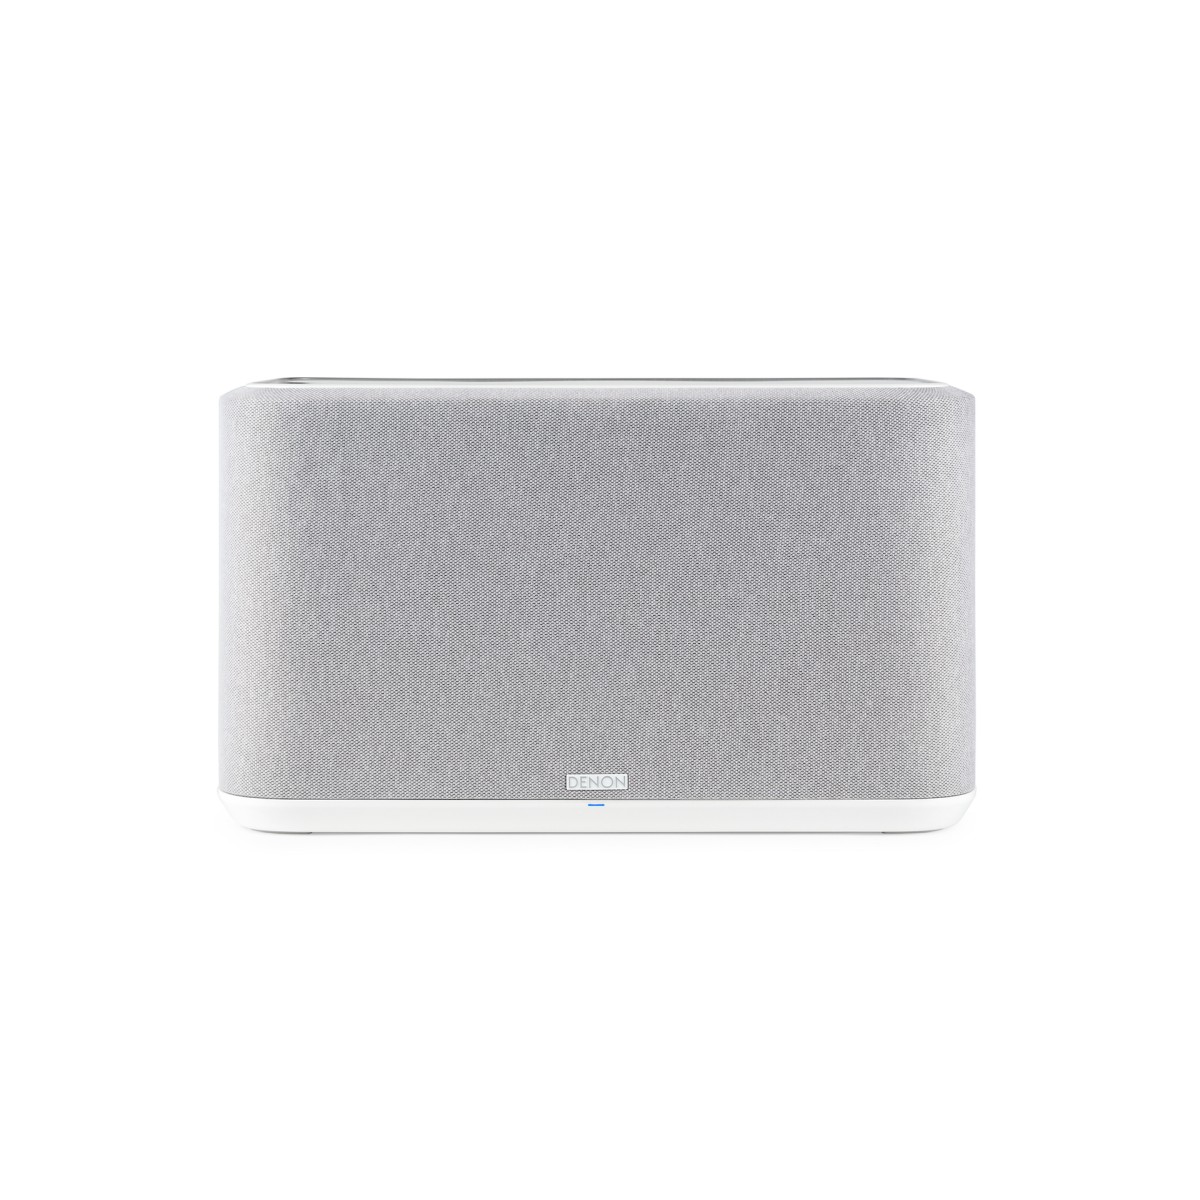 Hier sehen Sie den Artikel Home 350 Wireless Speaker white aus der Kategorie Enceintes sans fil. Dieser Artikel ist erhältlich bei cebrands.ch